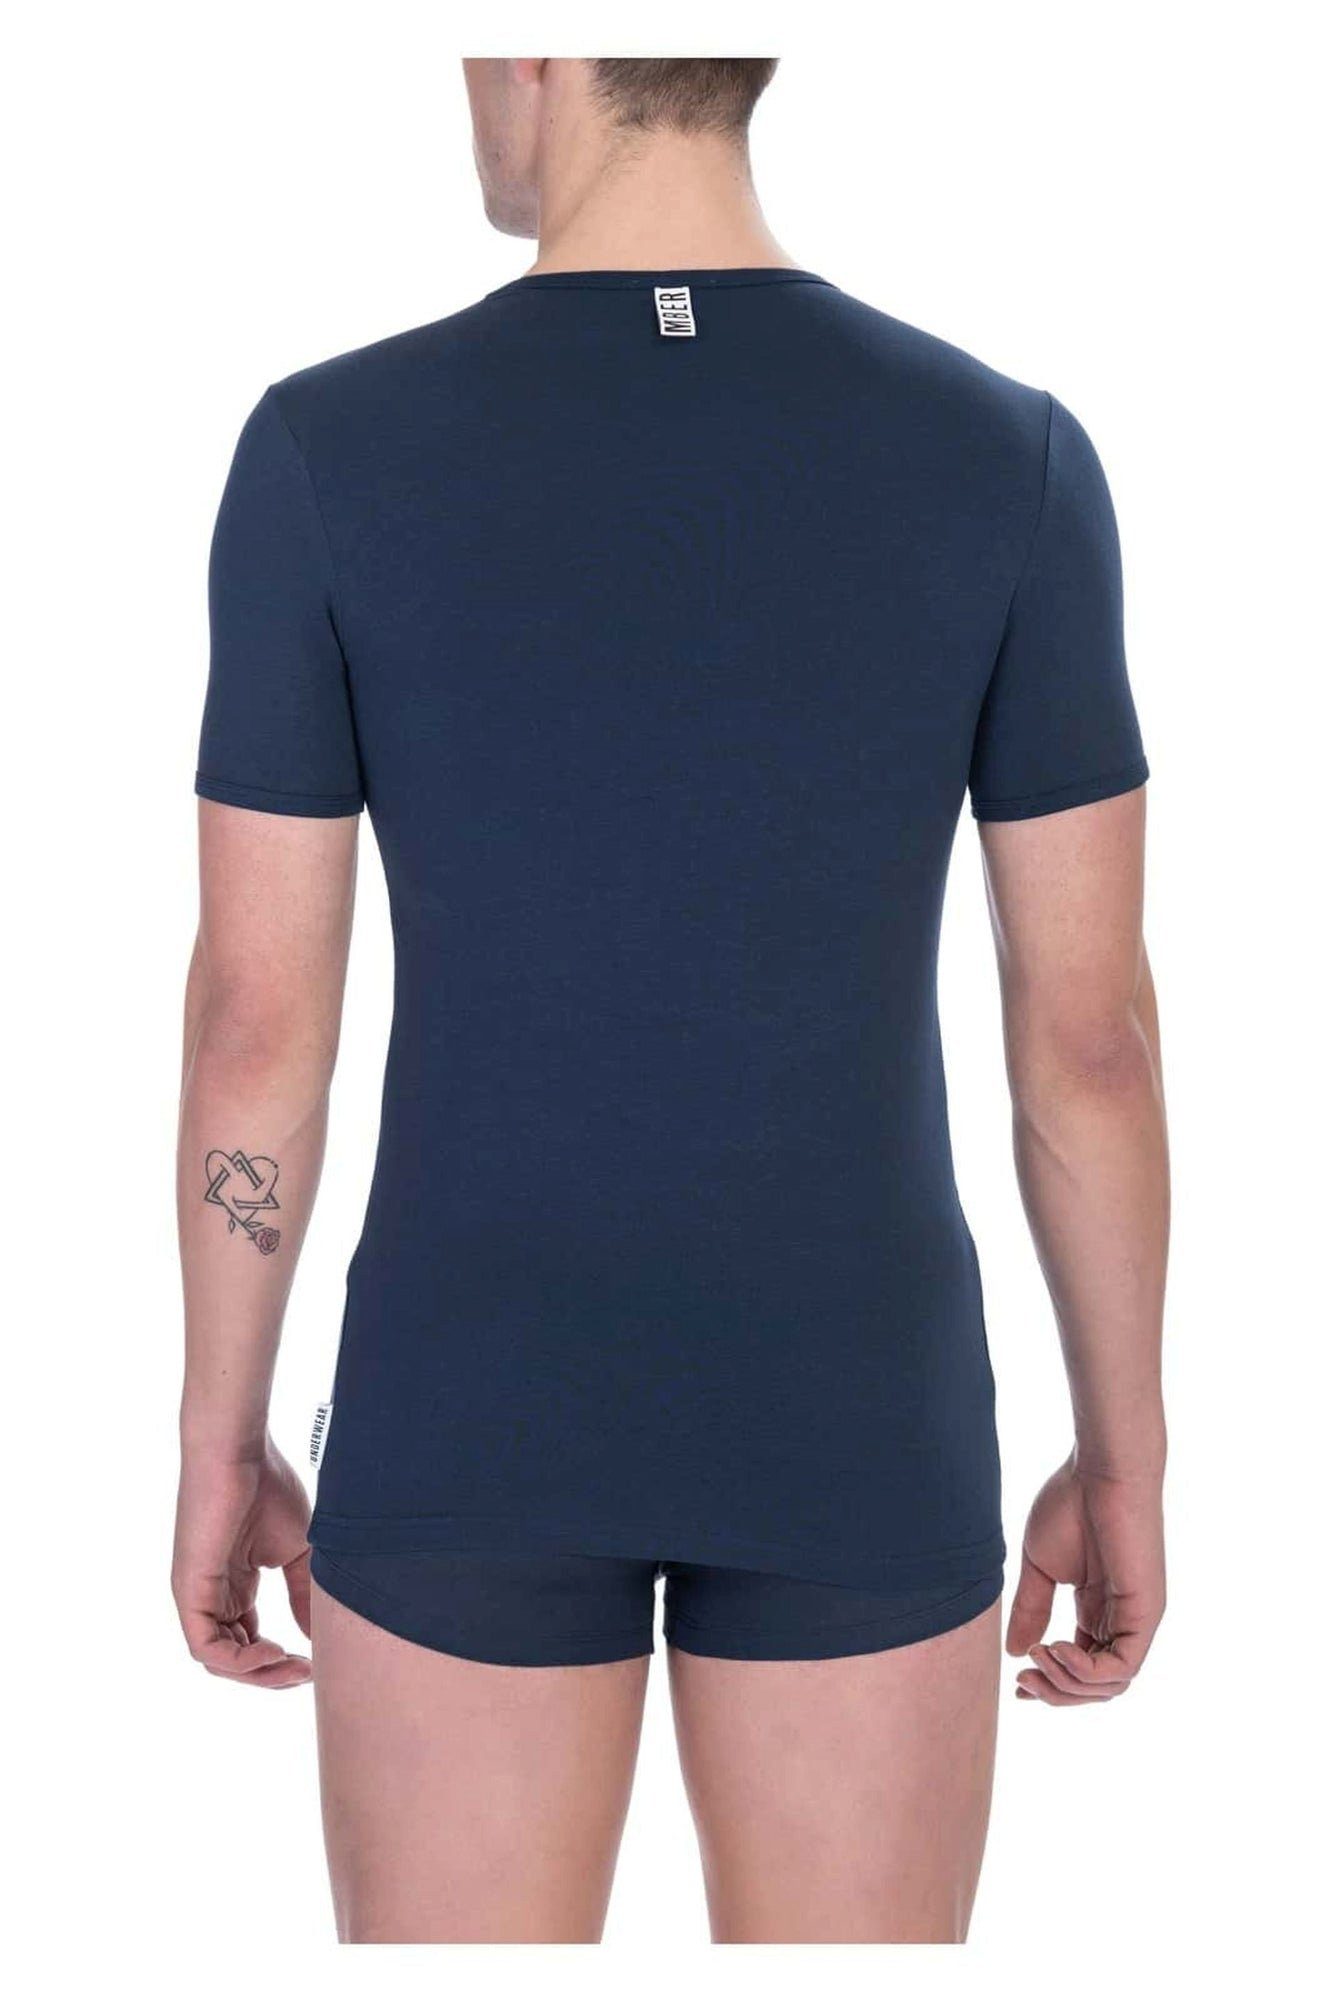 T-Shirts) T-Shirts), 2er-Pack, (Packung T-Shirt, R-Ausschnitt Navy Bikkembergs (2ei 2ei blau, 2er-Pack,